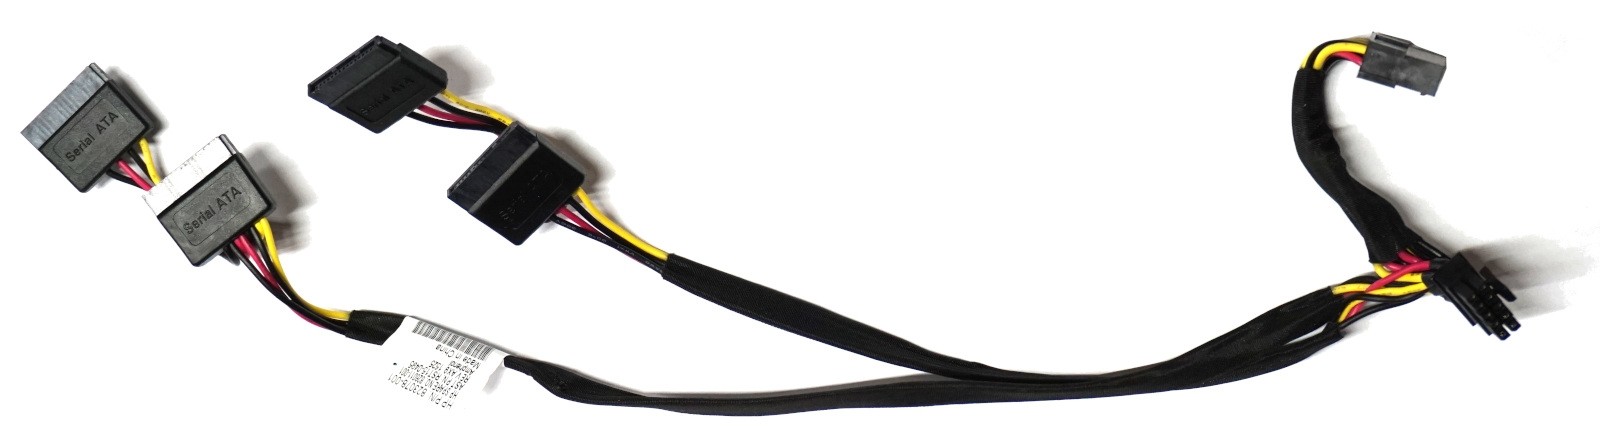 HP ProLiant DL360 Gen9 - Rear 4xSATA Power Cable